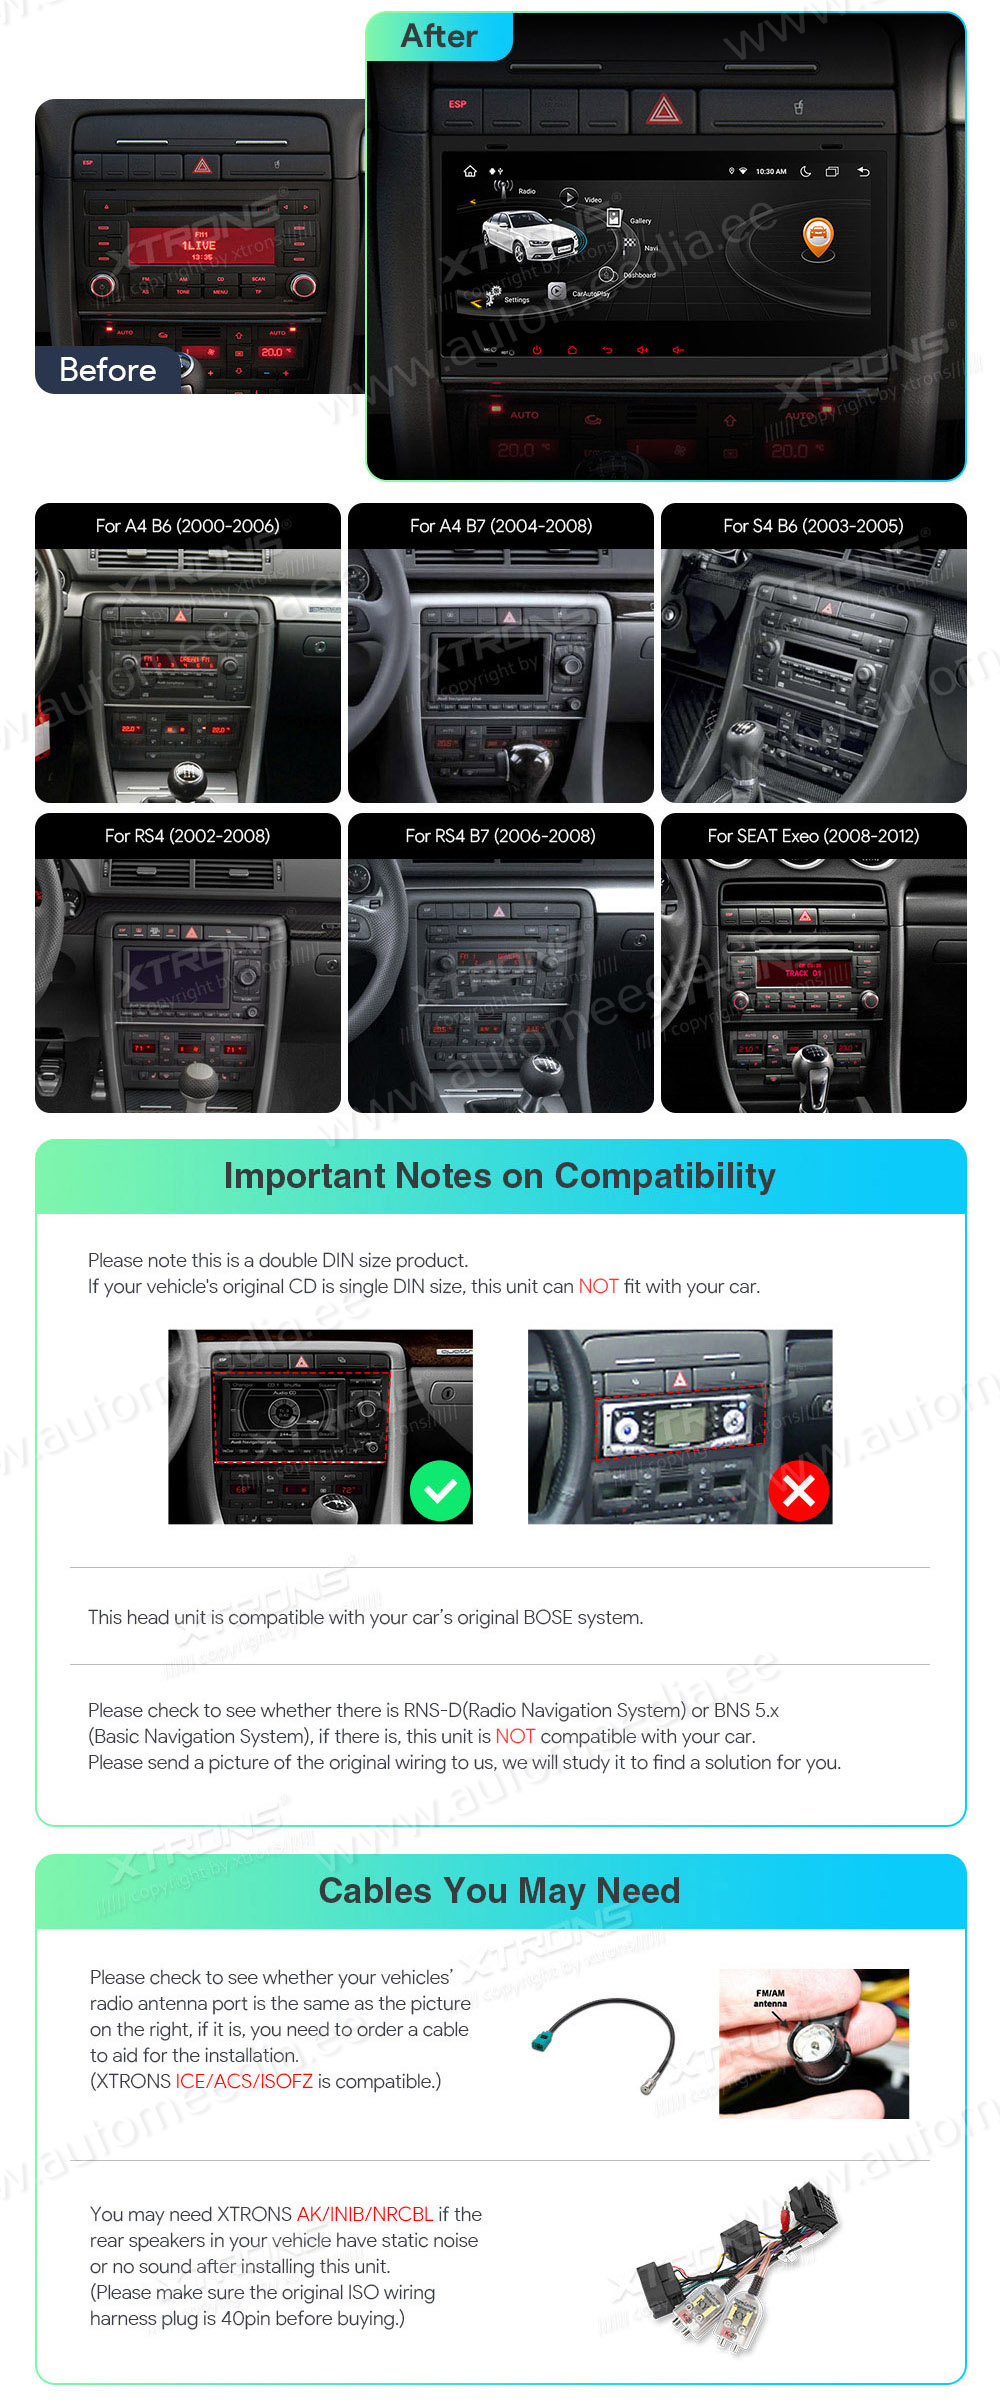 XTRONS Audi  mallikohtaisen multimediaradion soveltuvuus autoon